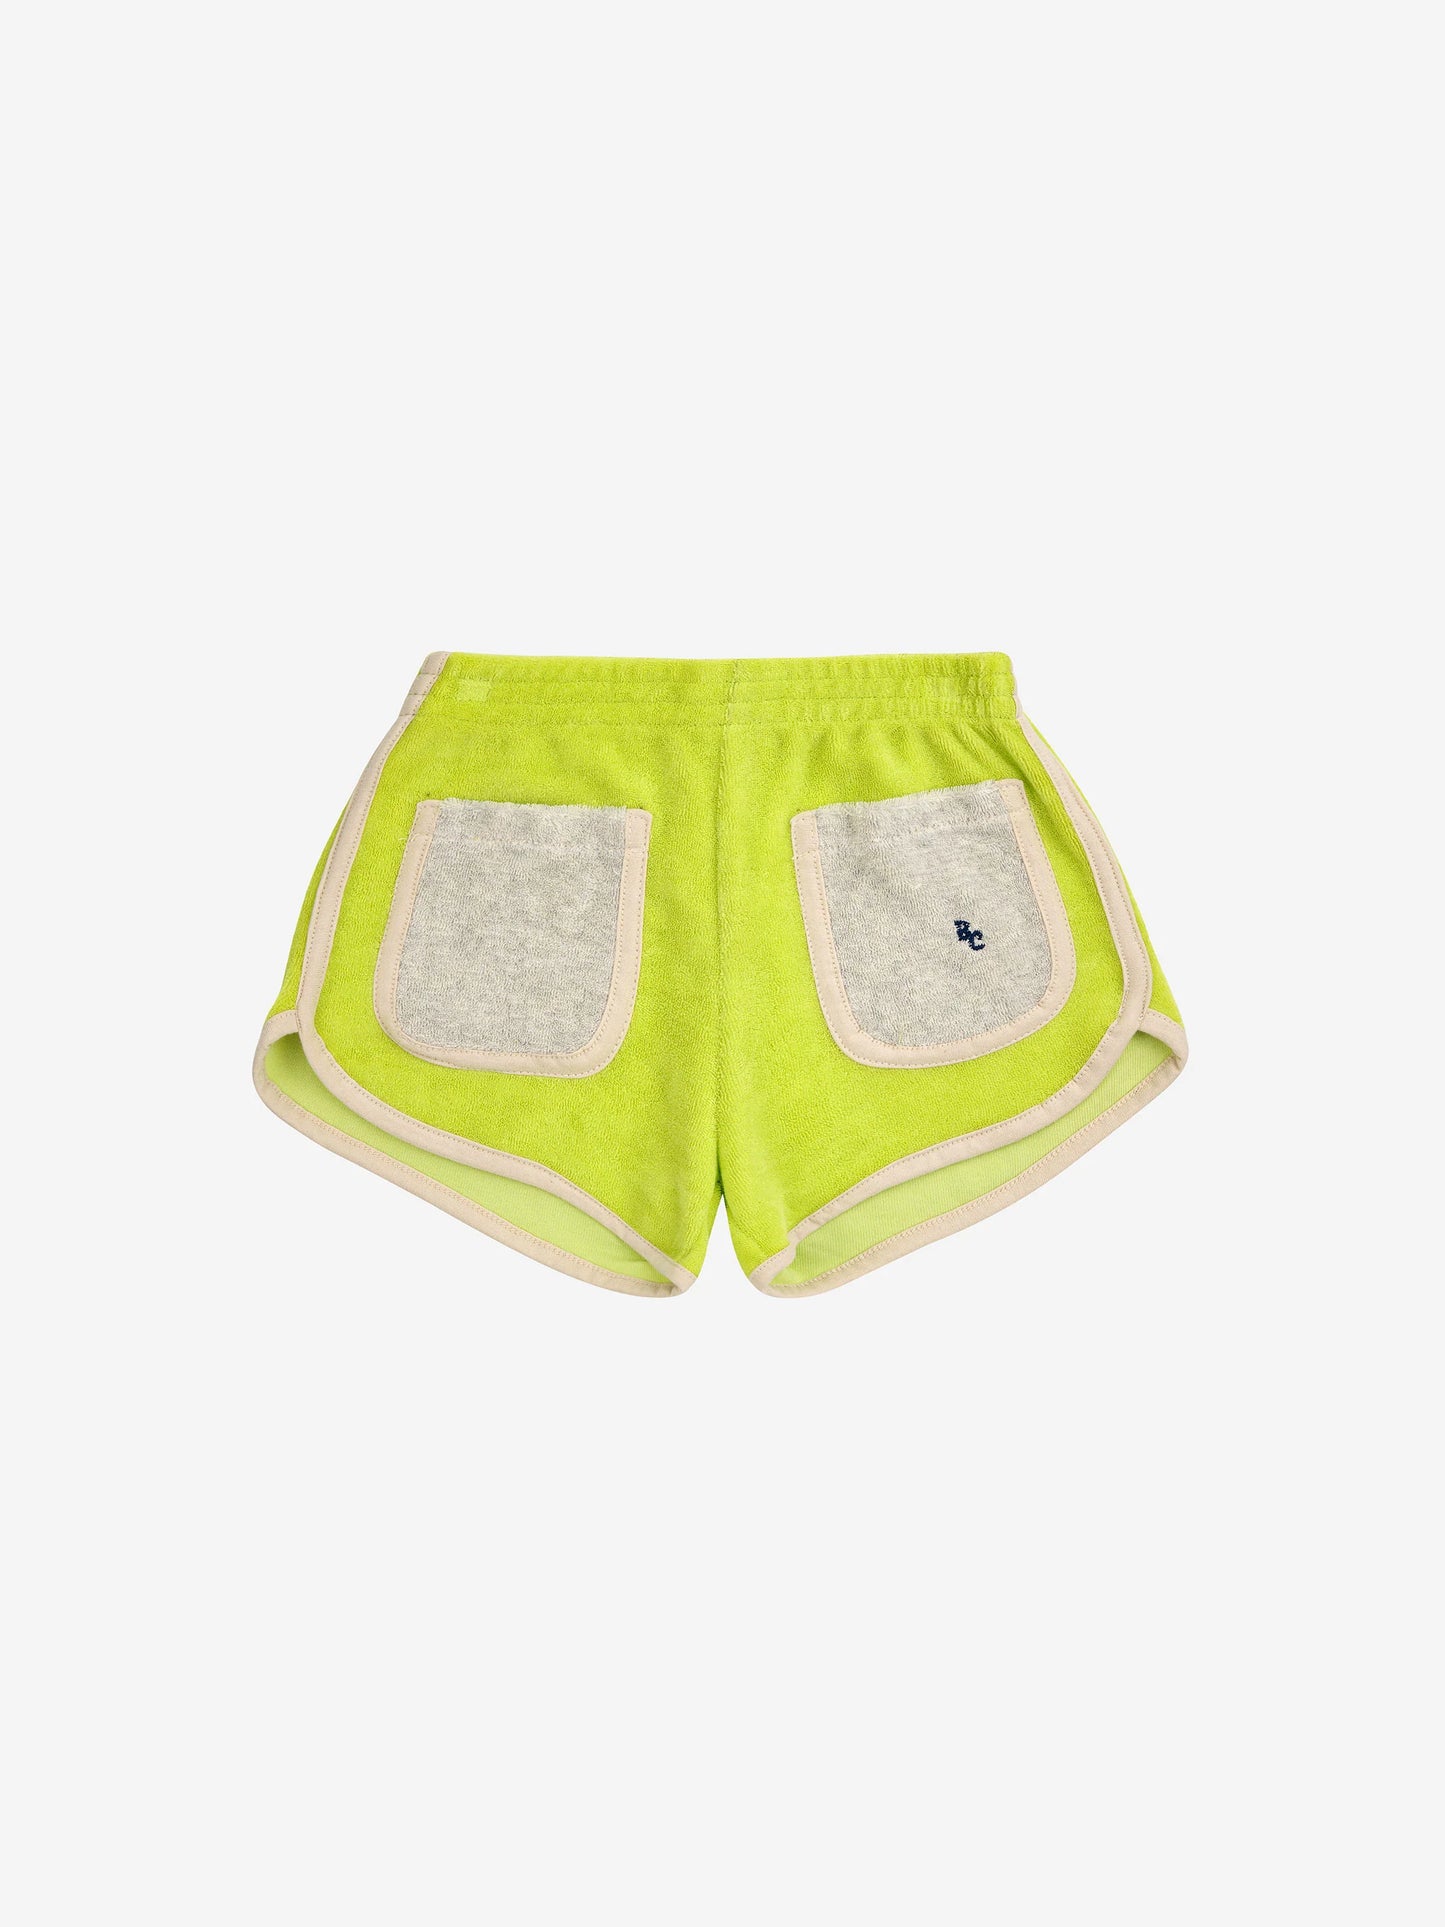 Bobo Choses Terry Shorts | Green Neon